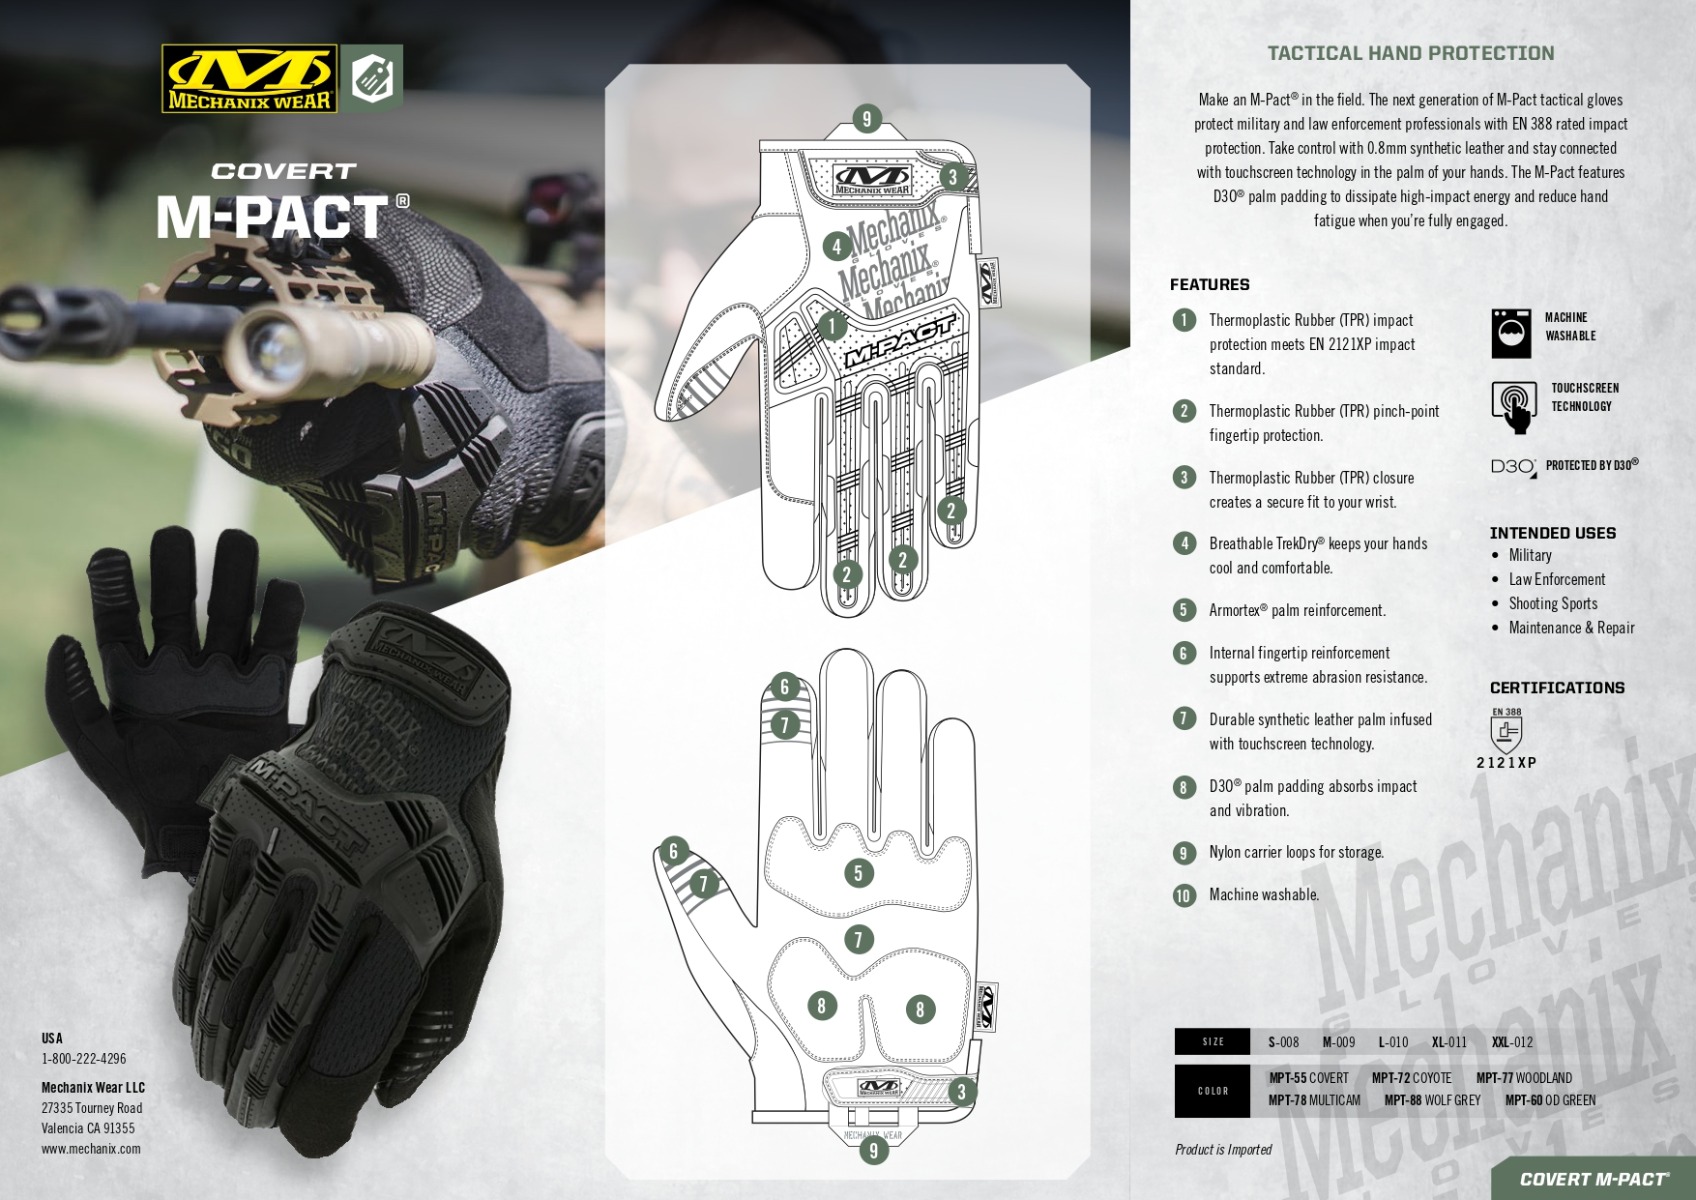 Zaščitite svoje roke z odličnimi Mechanix Wear taktičnimi rokavicami M-Pact® Covert Coyote. Certificirane za odpornost proti udarcem in z odlično prileganje, so idealne za delo v zahtevnih pogojih. Zaščitite sebe in povečajte svojo produktivnost z vrhunskimi rokavicami Mechanix Wear.